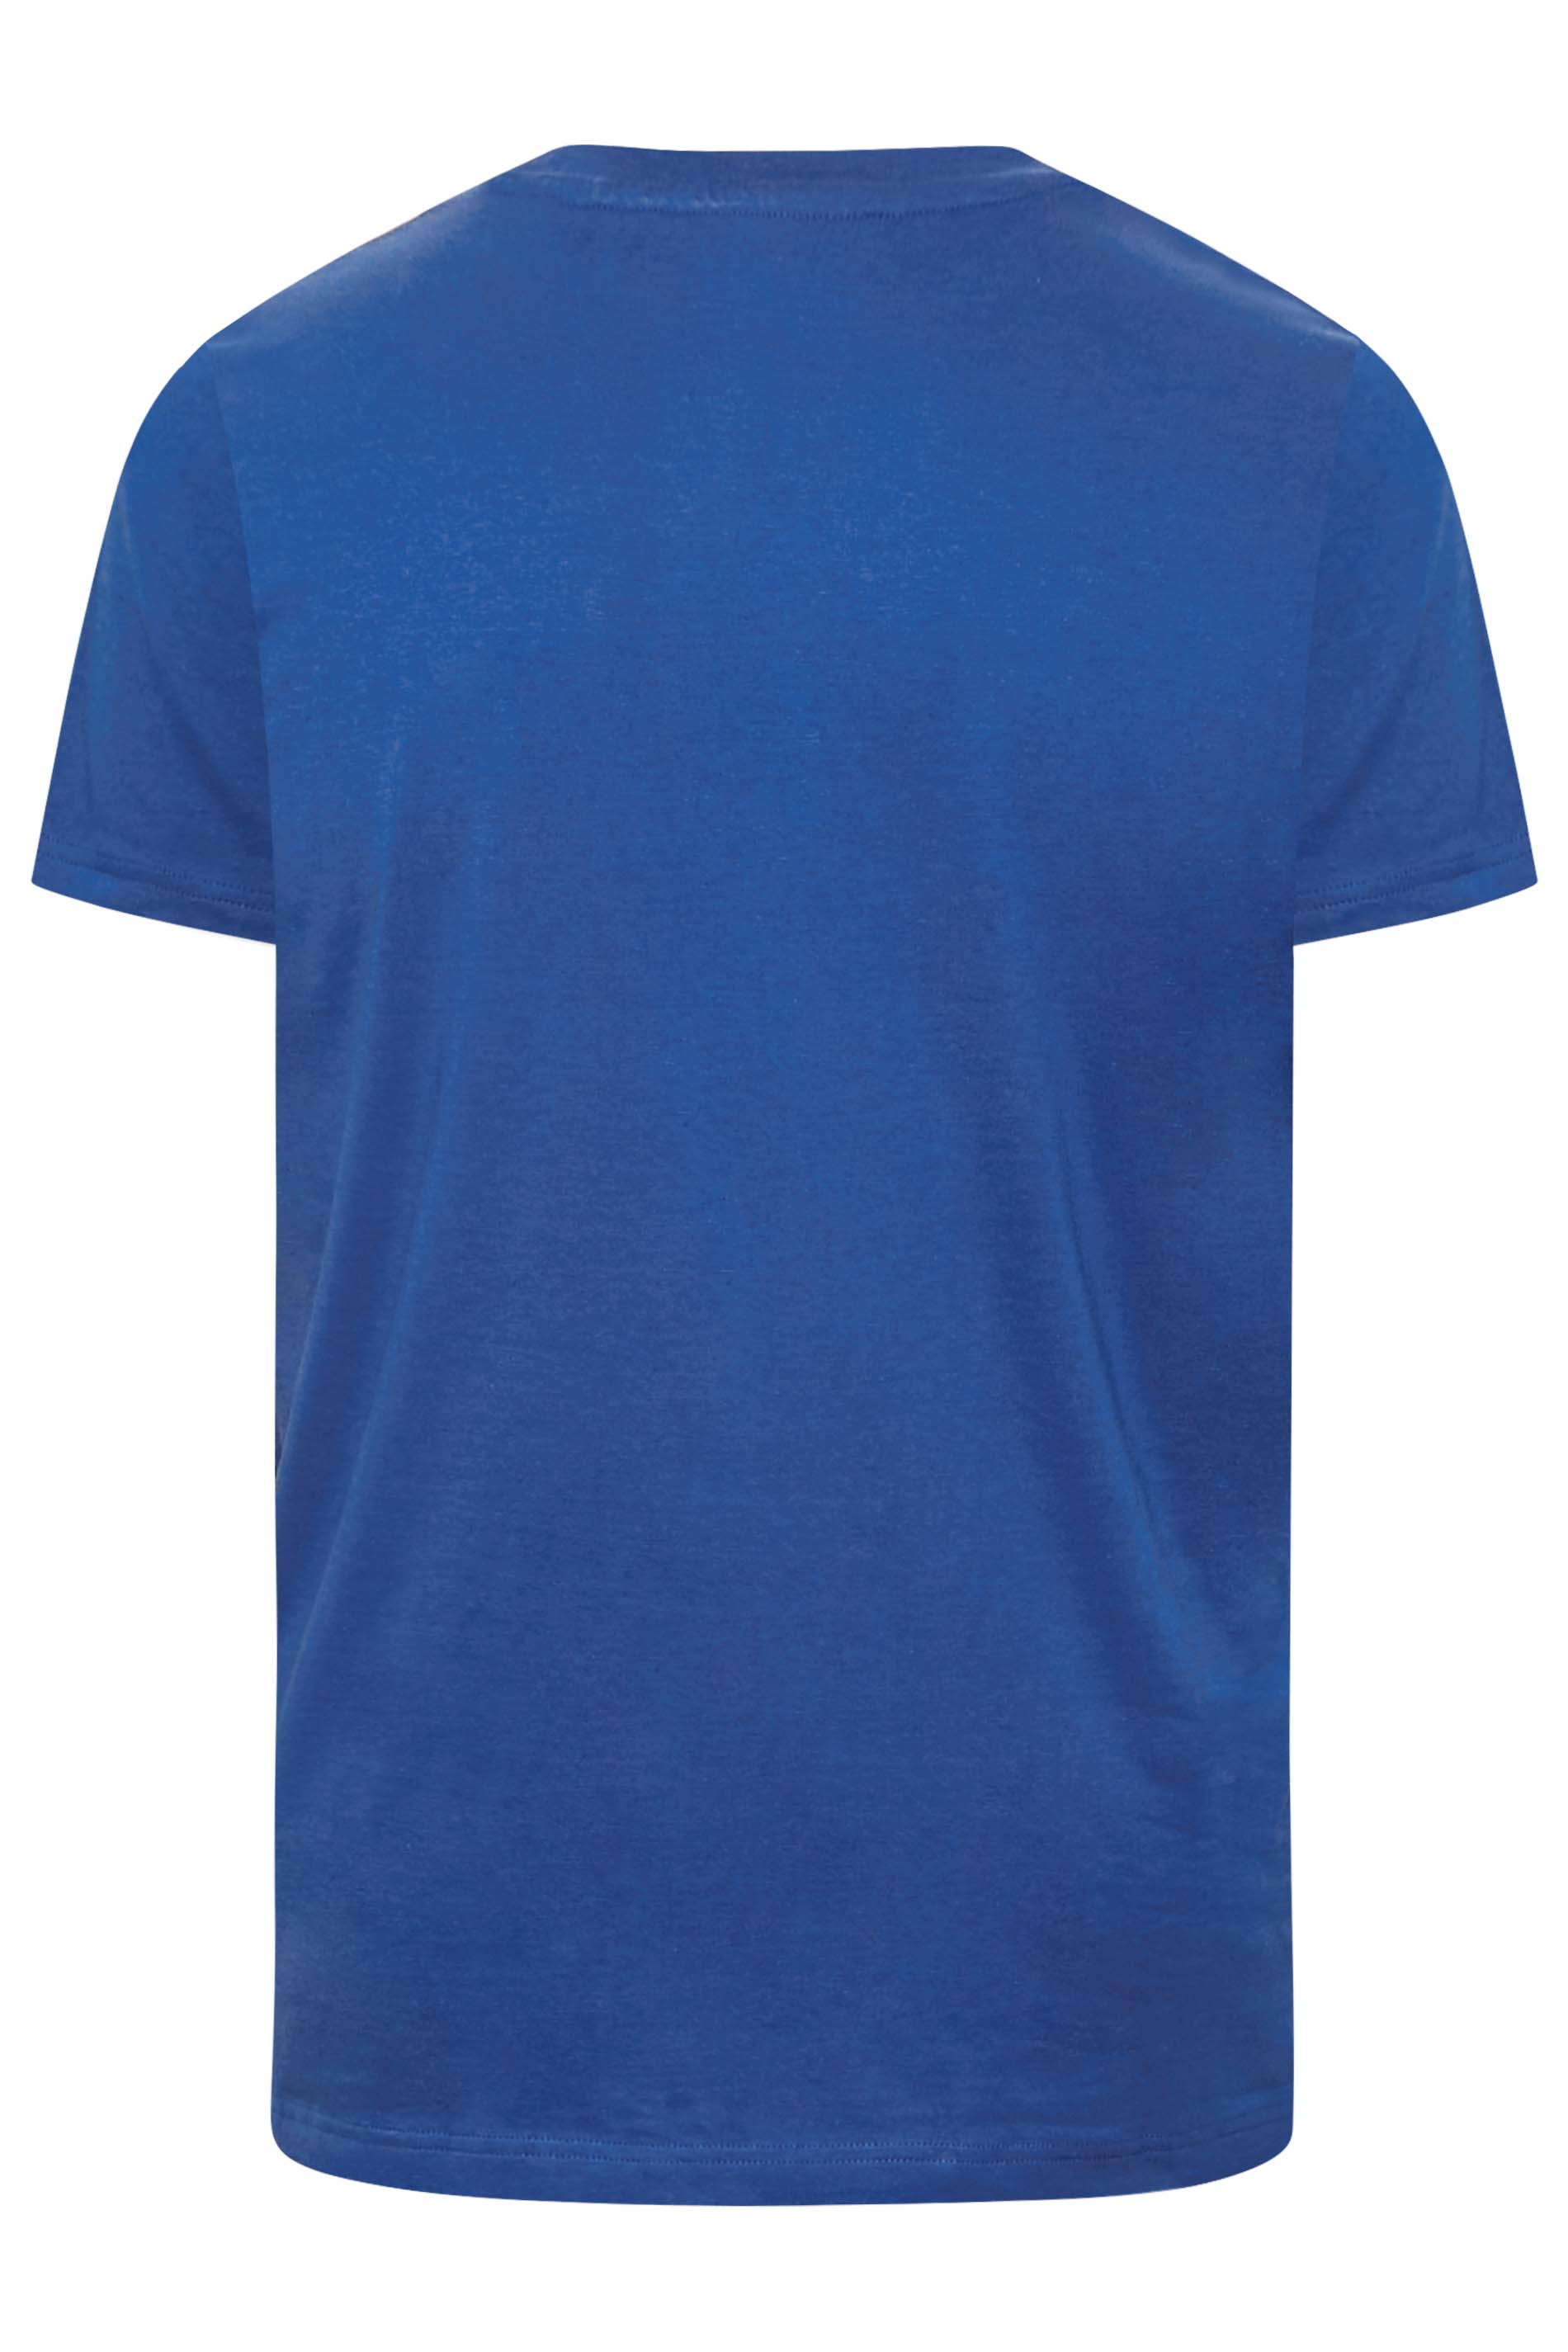 BadRhino Bright Blue Core T-Shirt | BadRhino